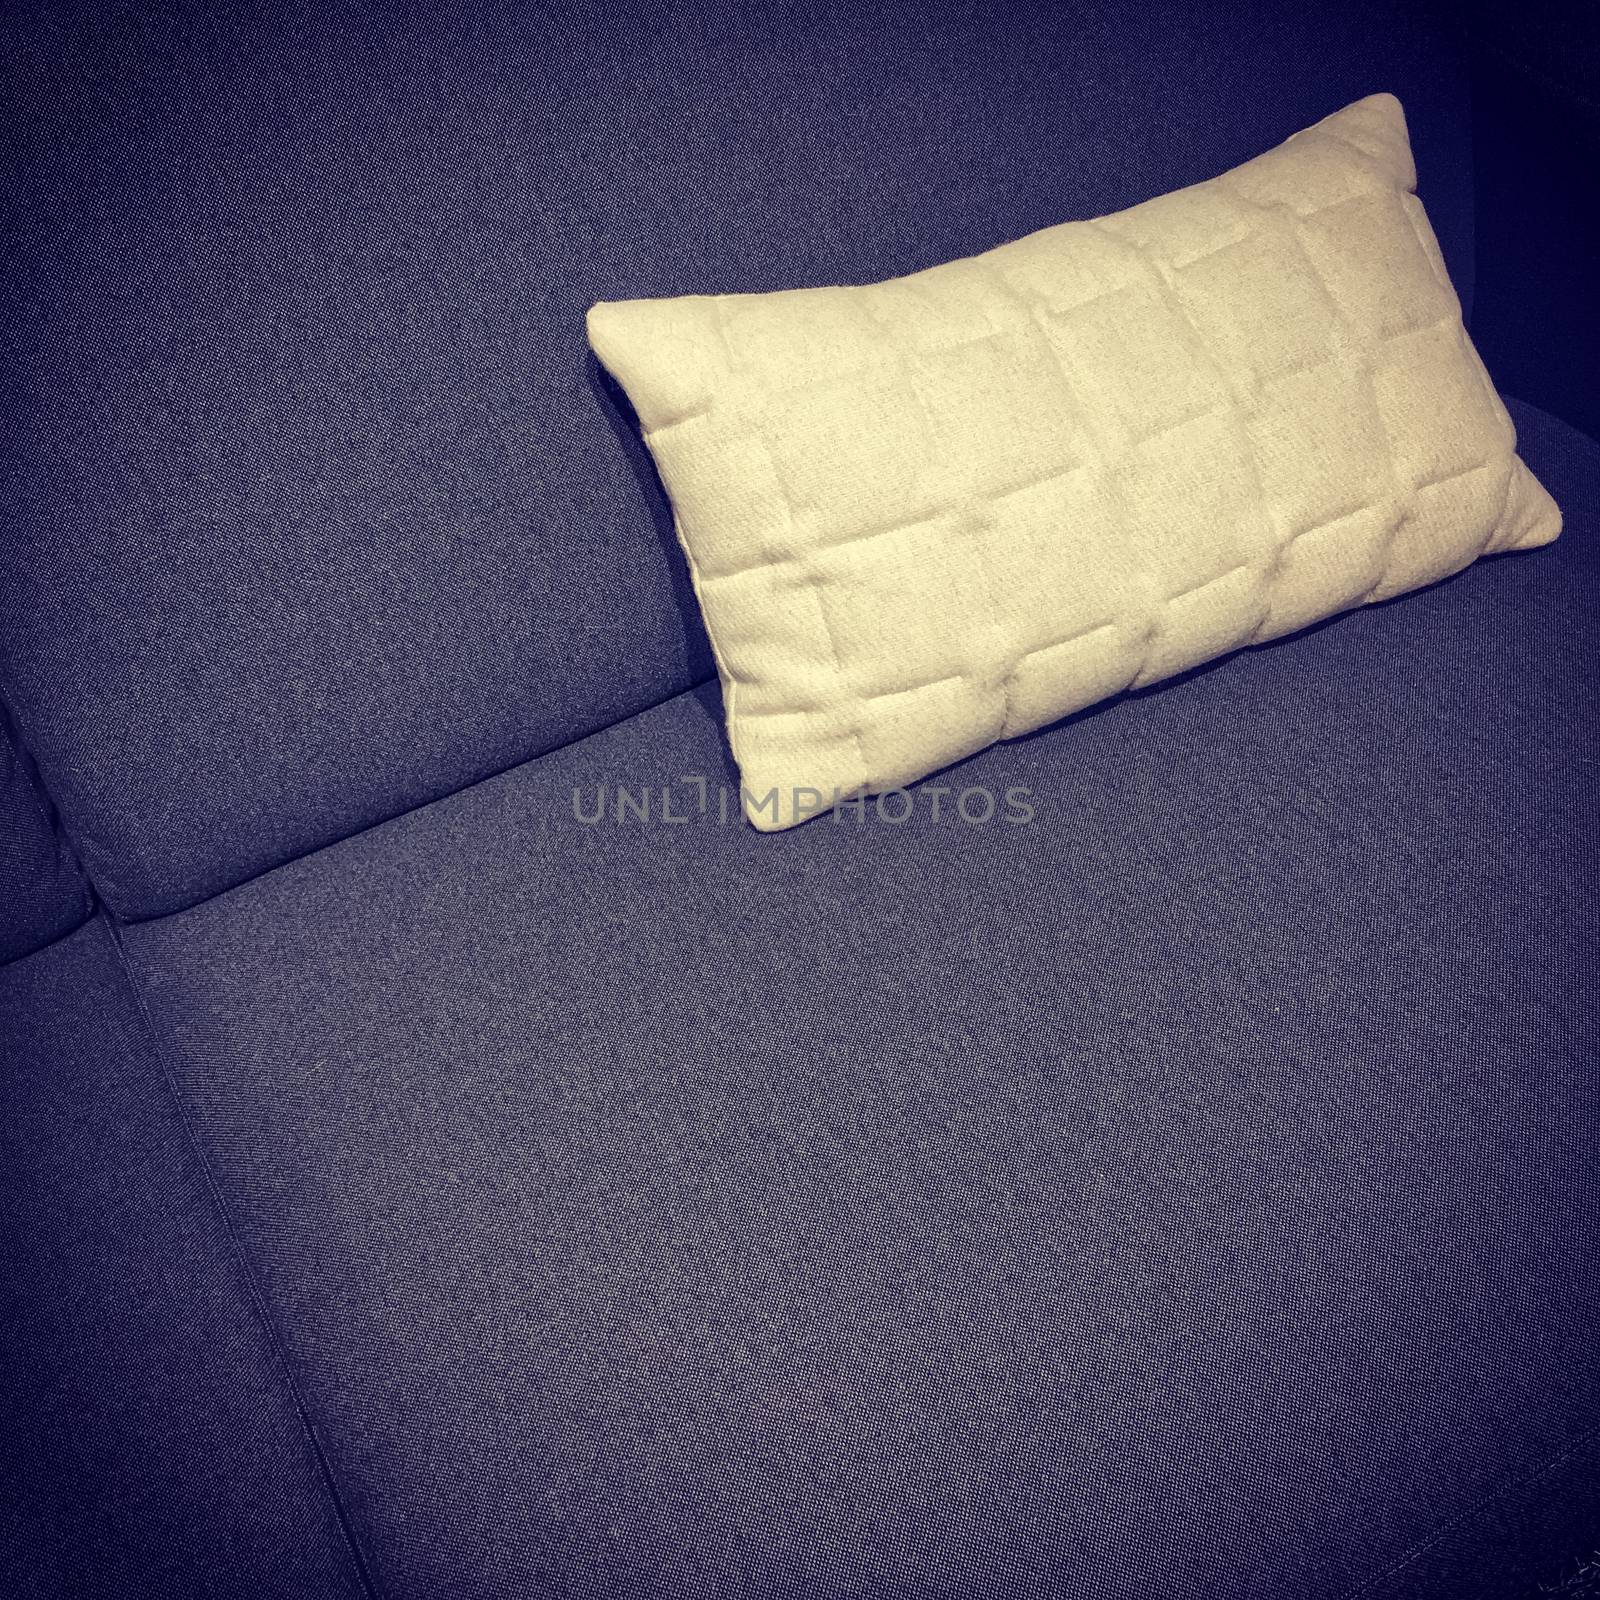 Dark purple sofa with white cushion by anikasalsera